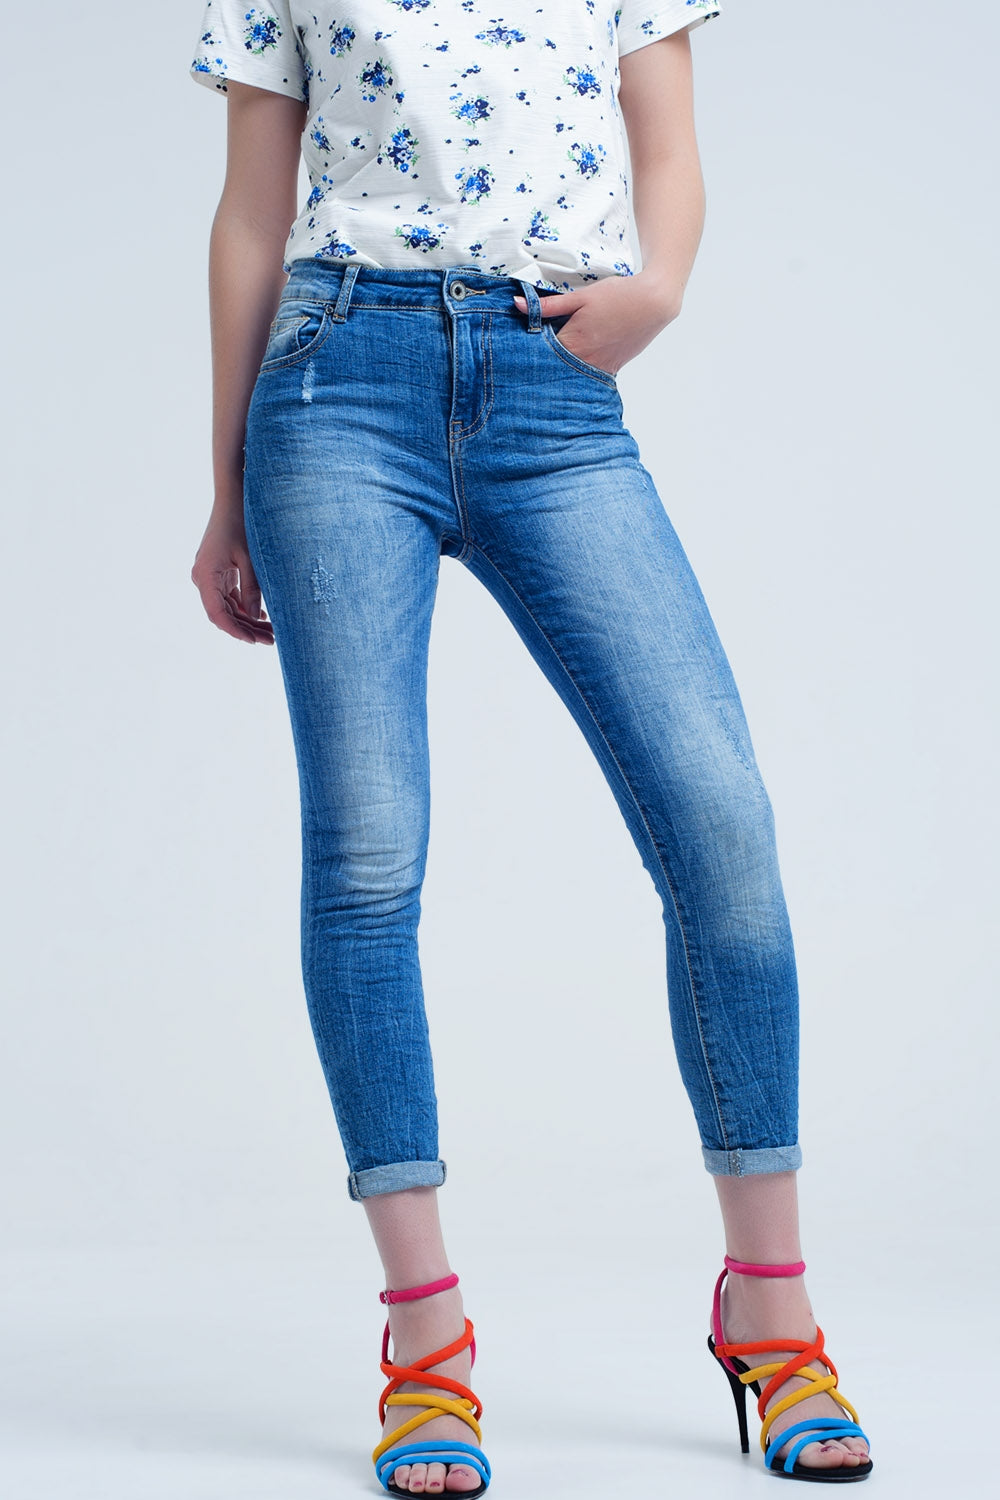 jeans ajustados con color gastado y arrugas